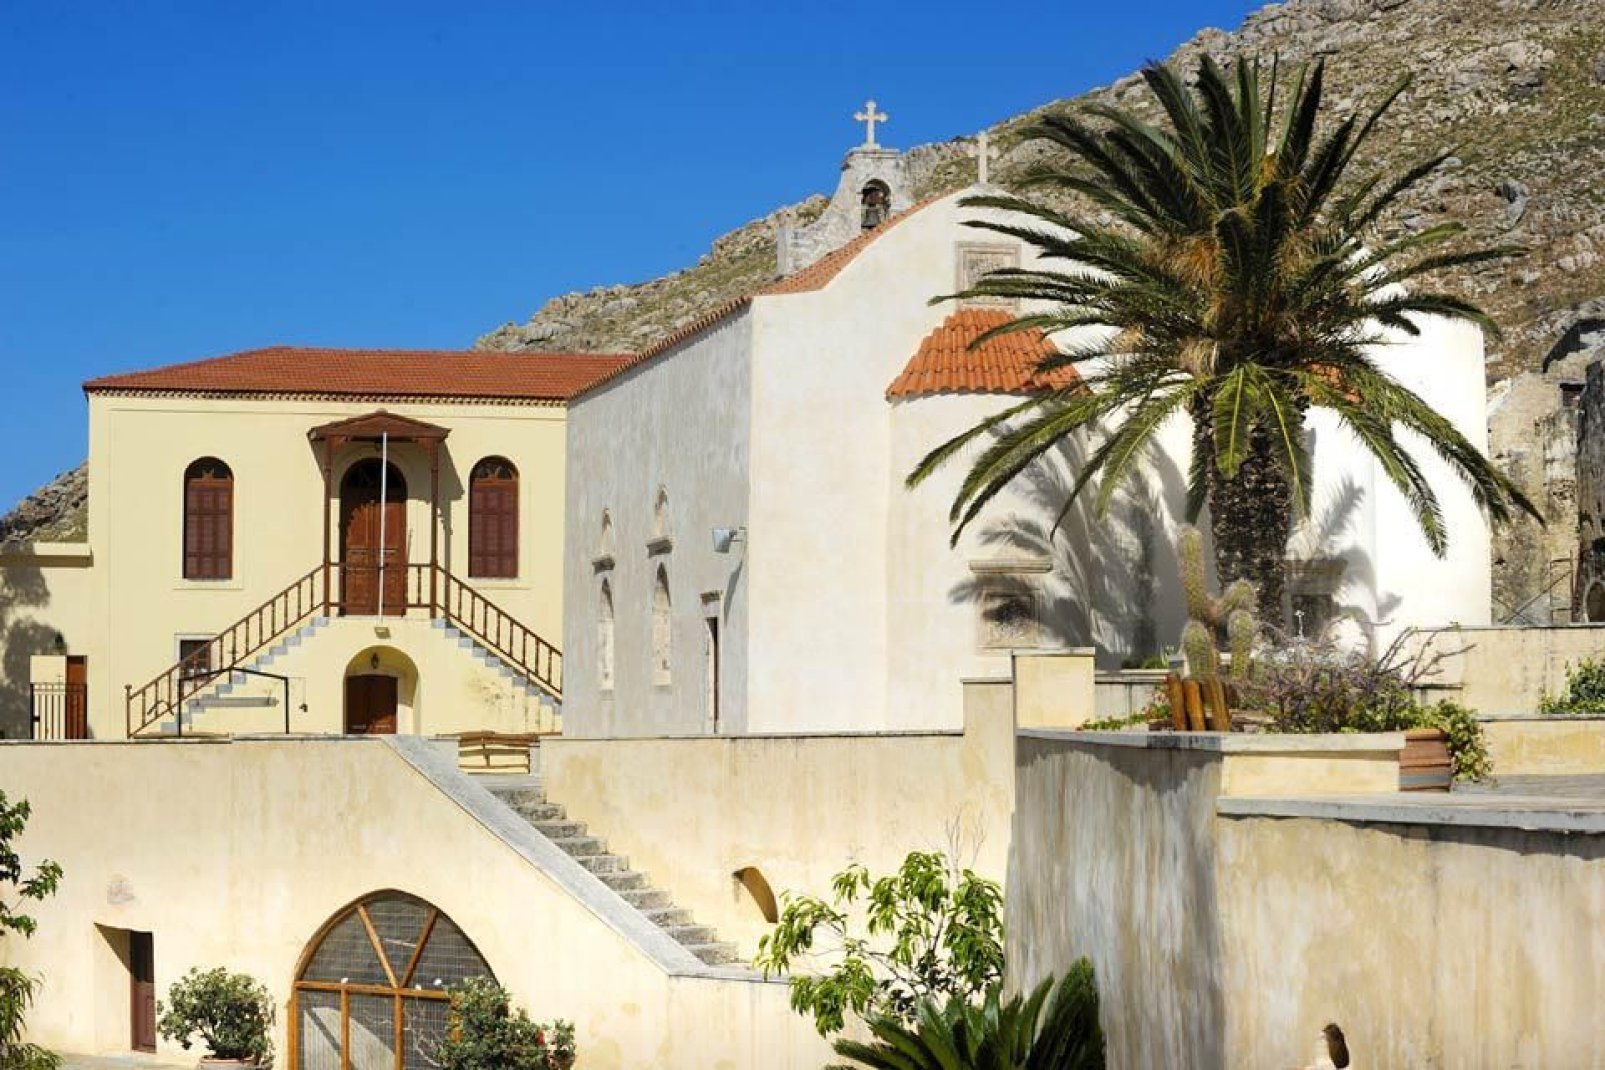 Este hermoso monasterio, situado ante el mar, conserva con celo una reliquia de la Santa Cruz. Su museo está abierto a los visitantes.